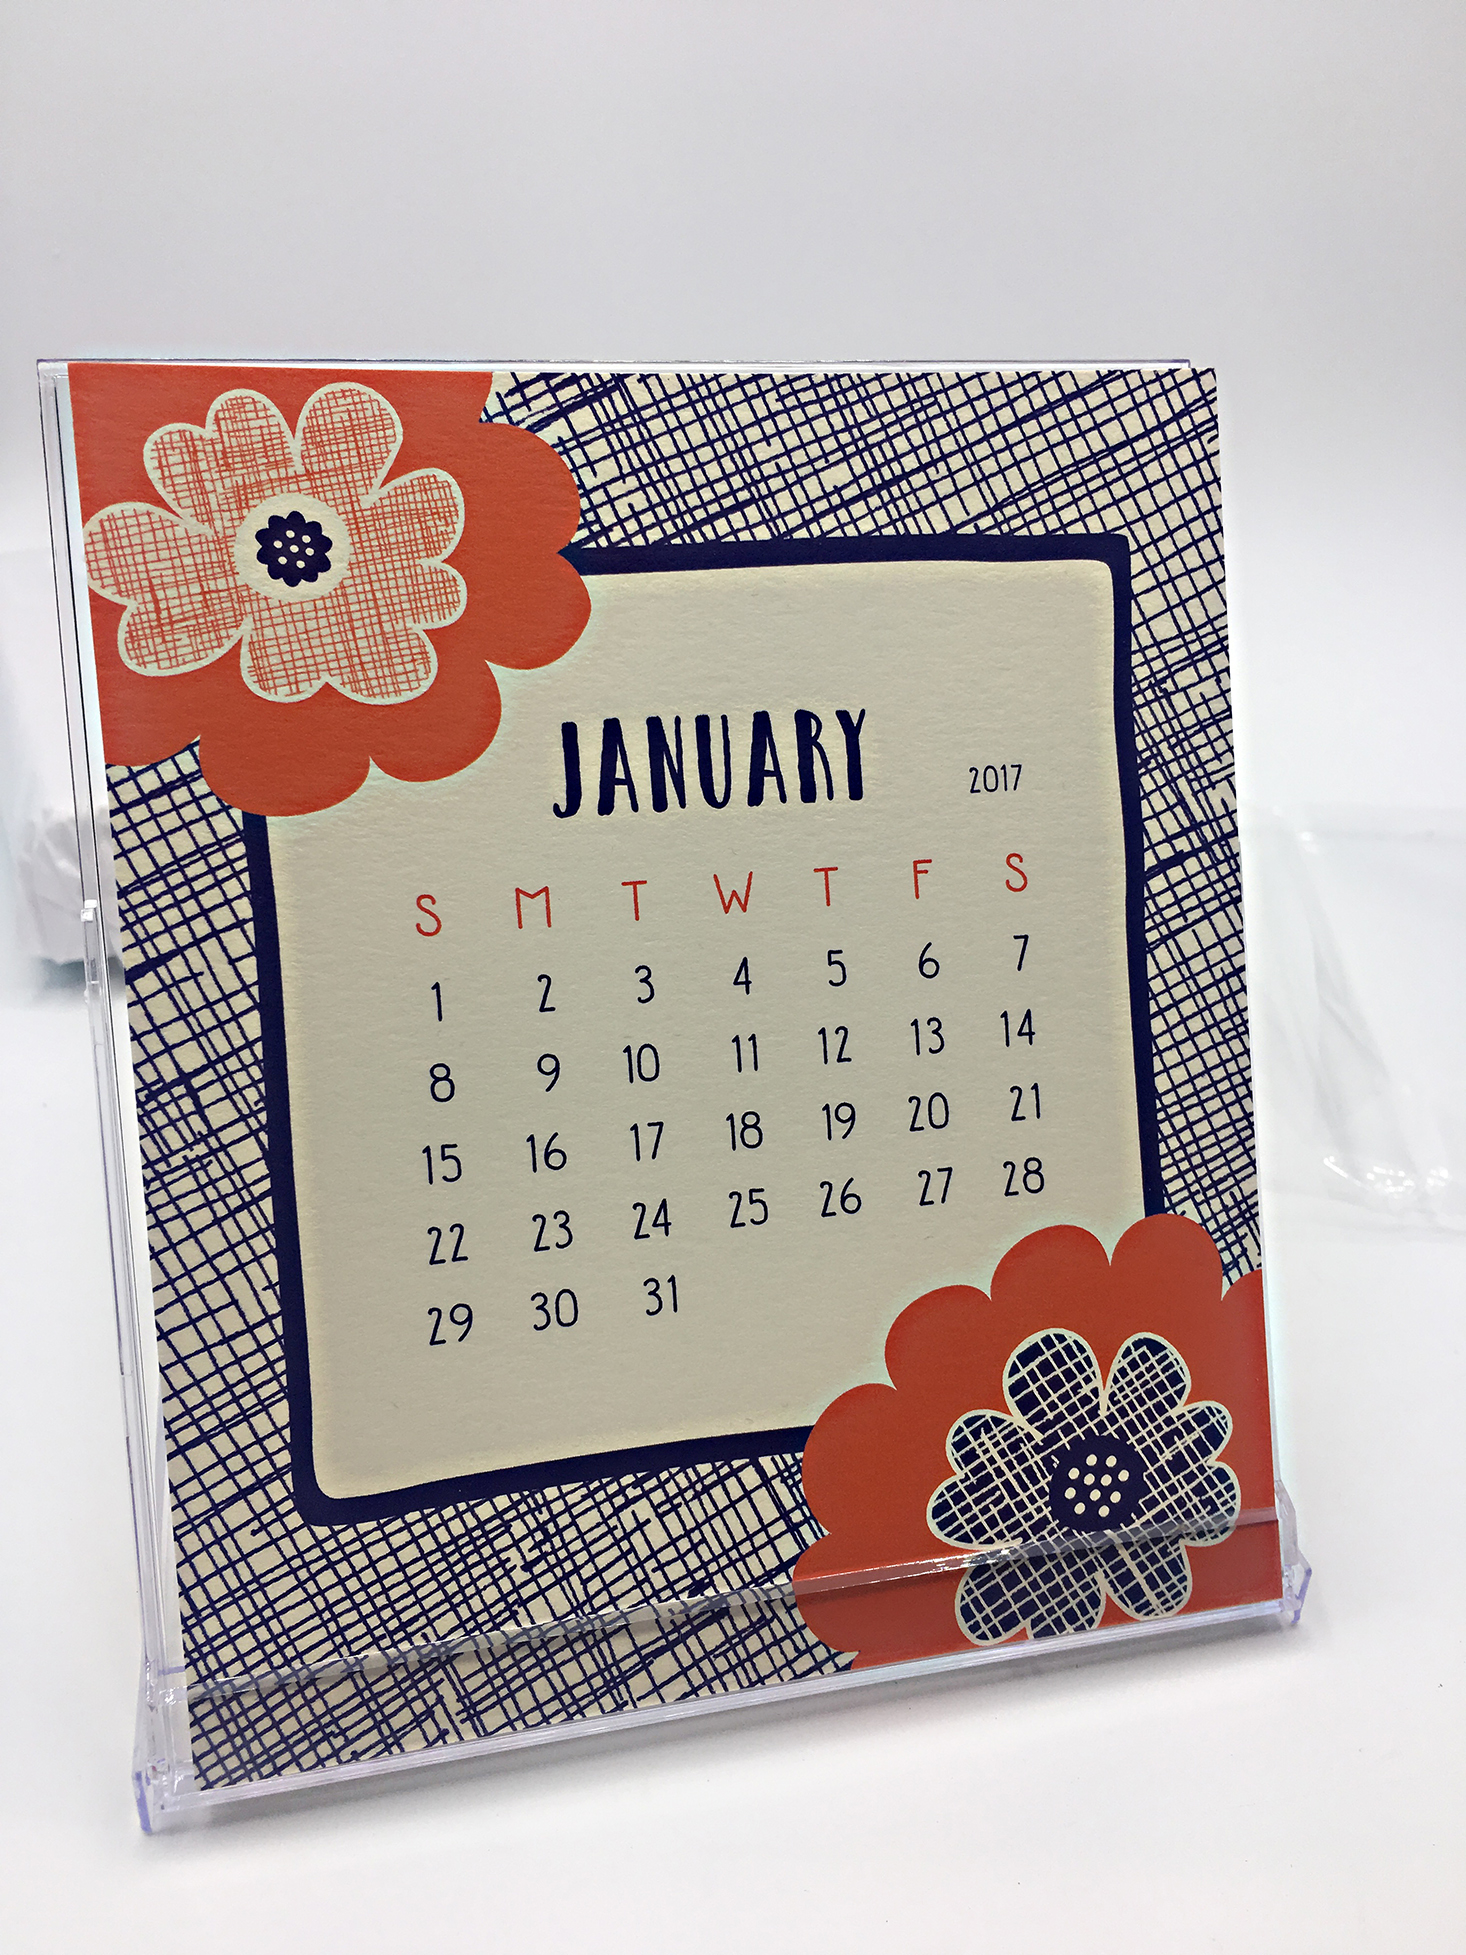 revel-box-december-2016-calendar